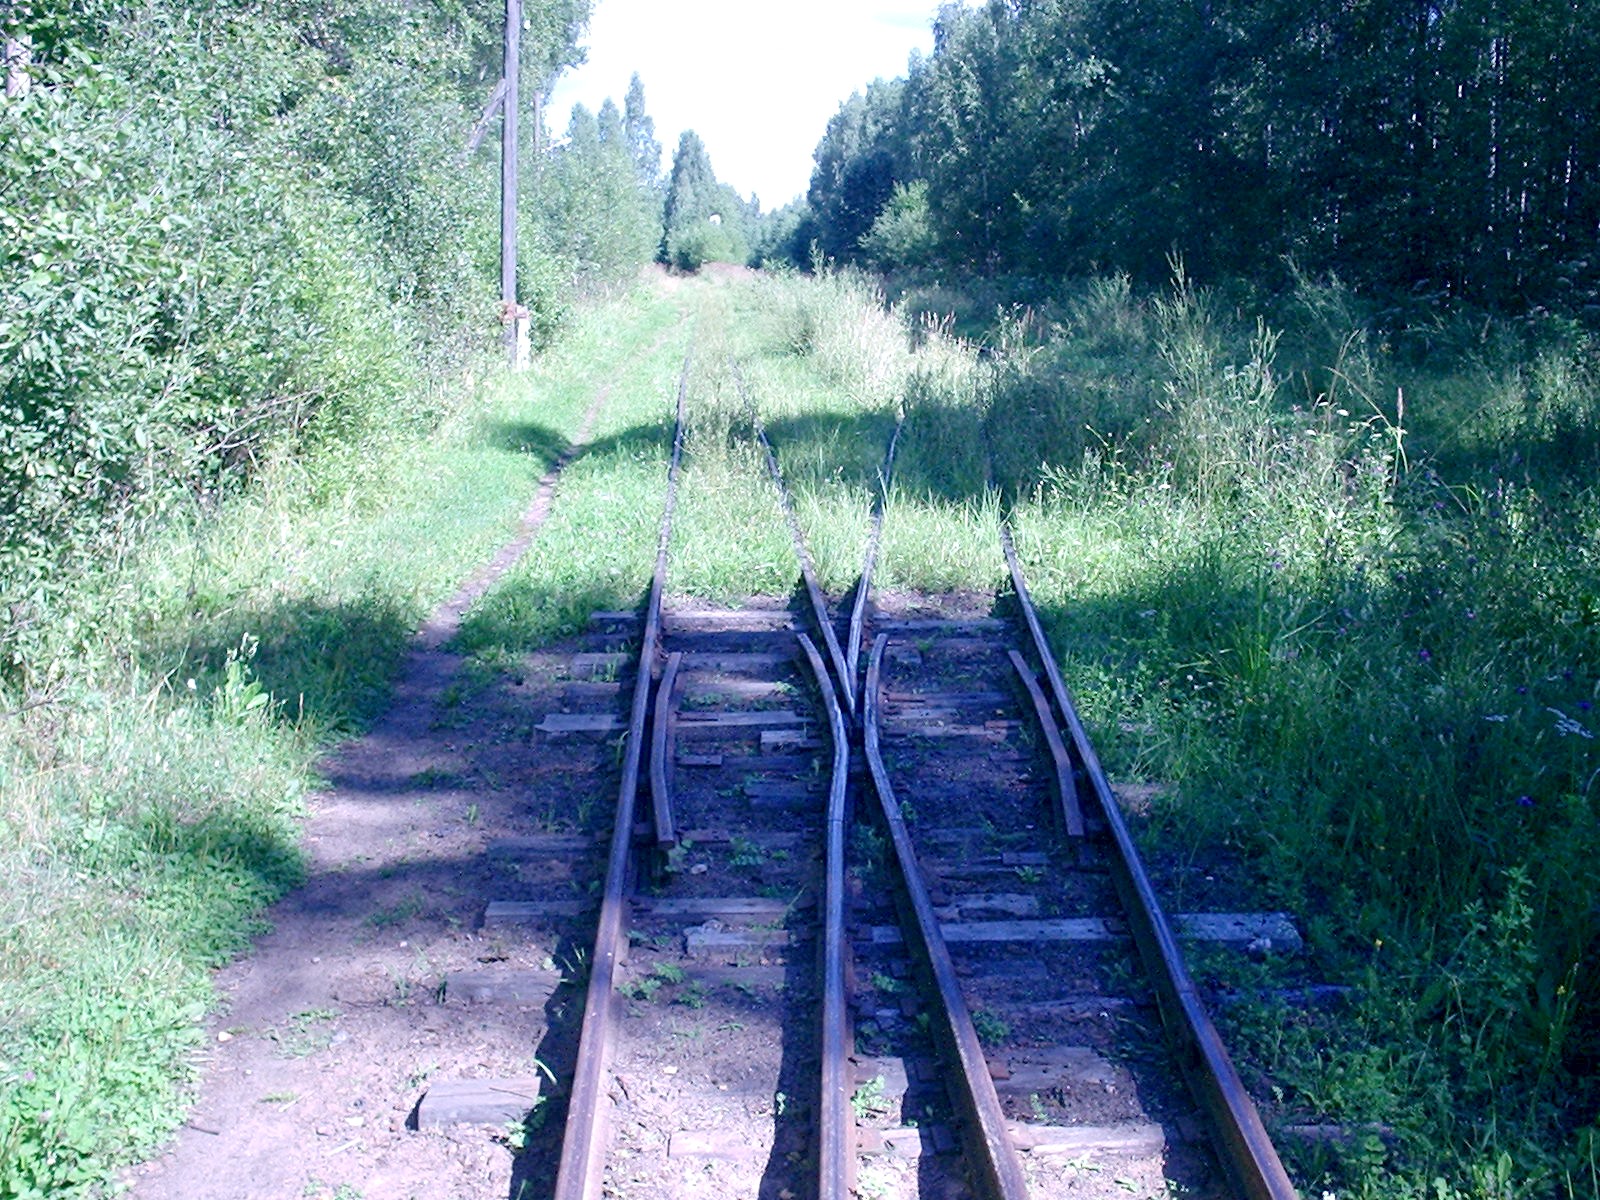 Узкоколейная железная дорога Васильевского предприятия промышленного железнодорожного транспорта  — фотографии, сделанные в 2005 году (часть 15)